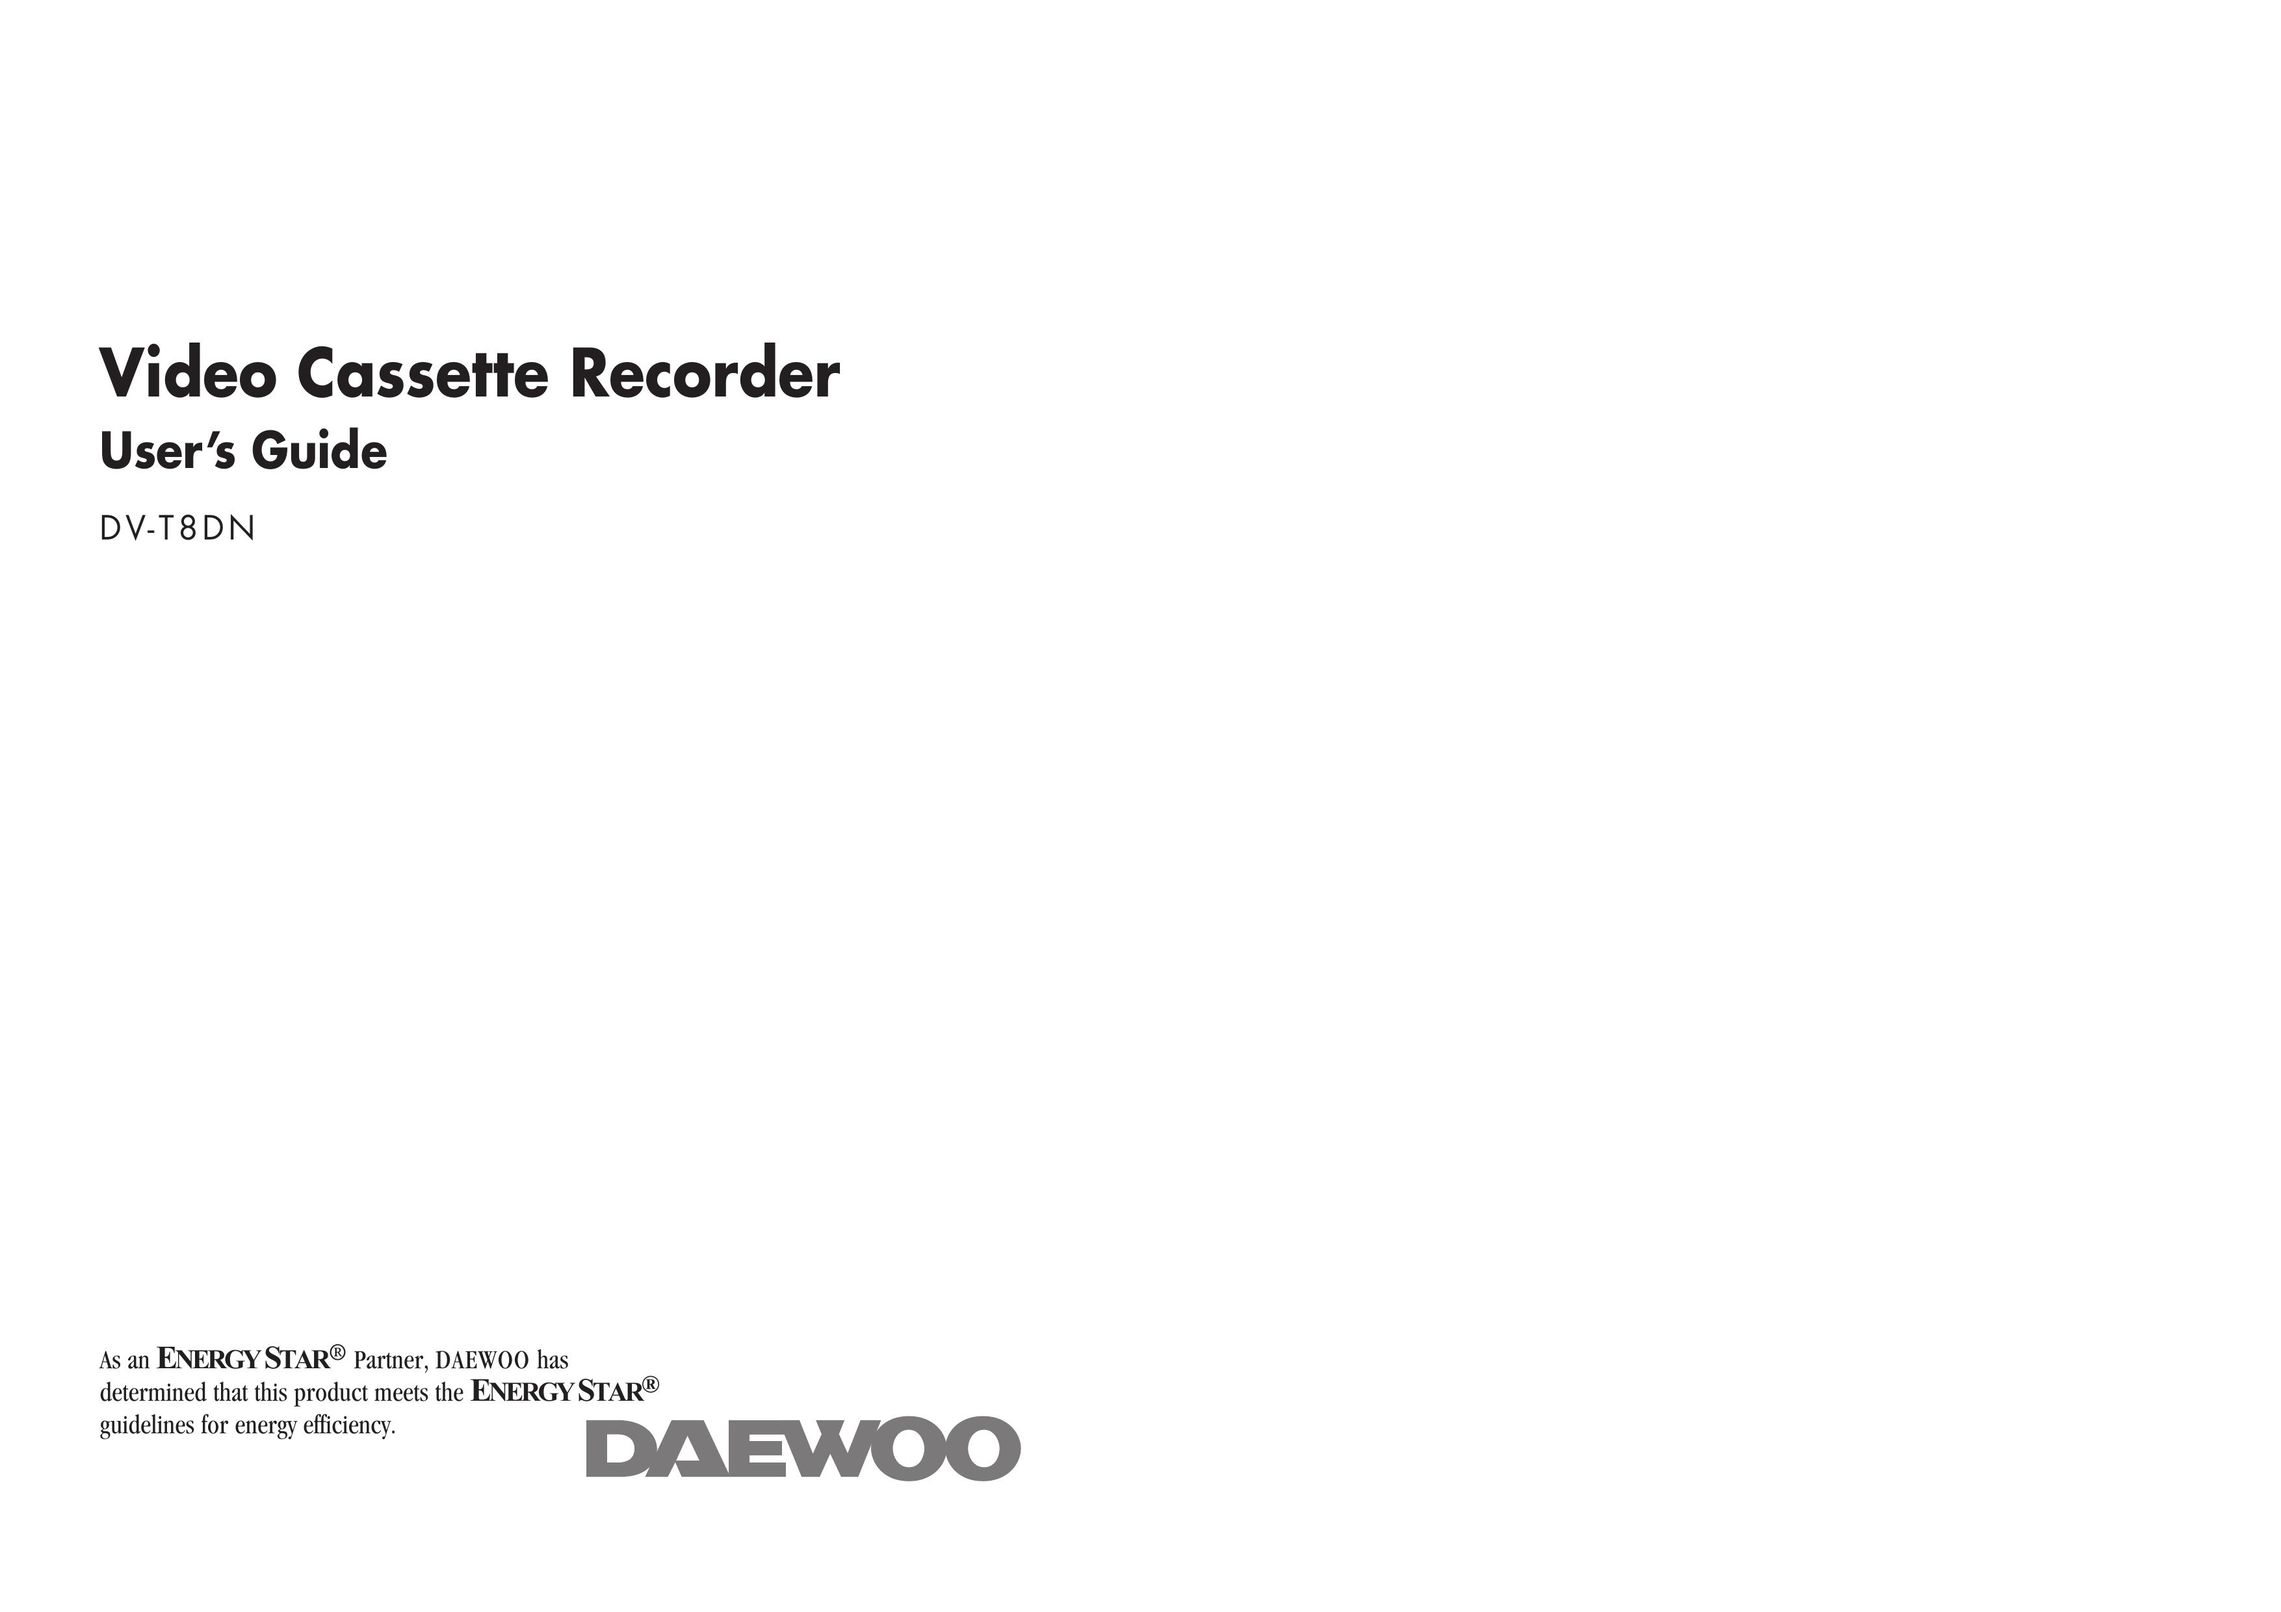 Daewoo DV-T8DN Microcassette Recorder User Manual